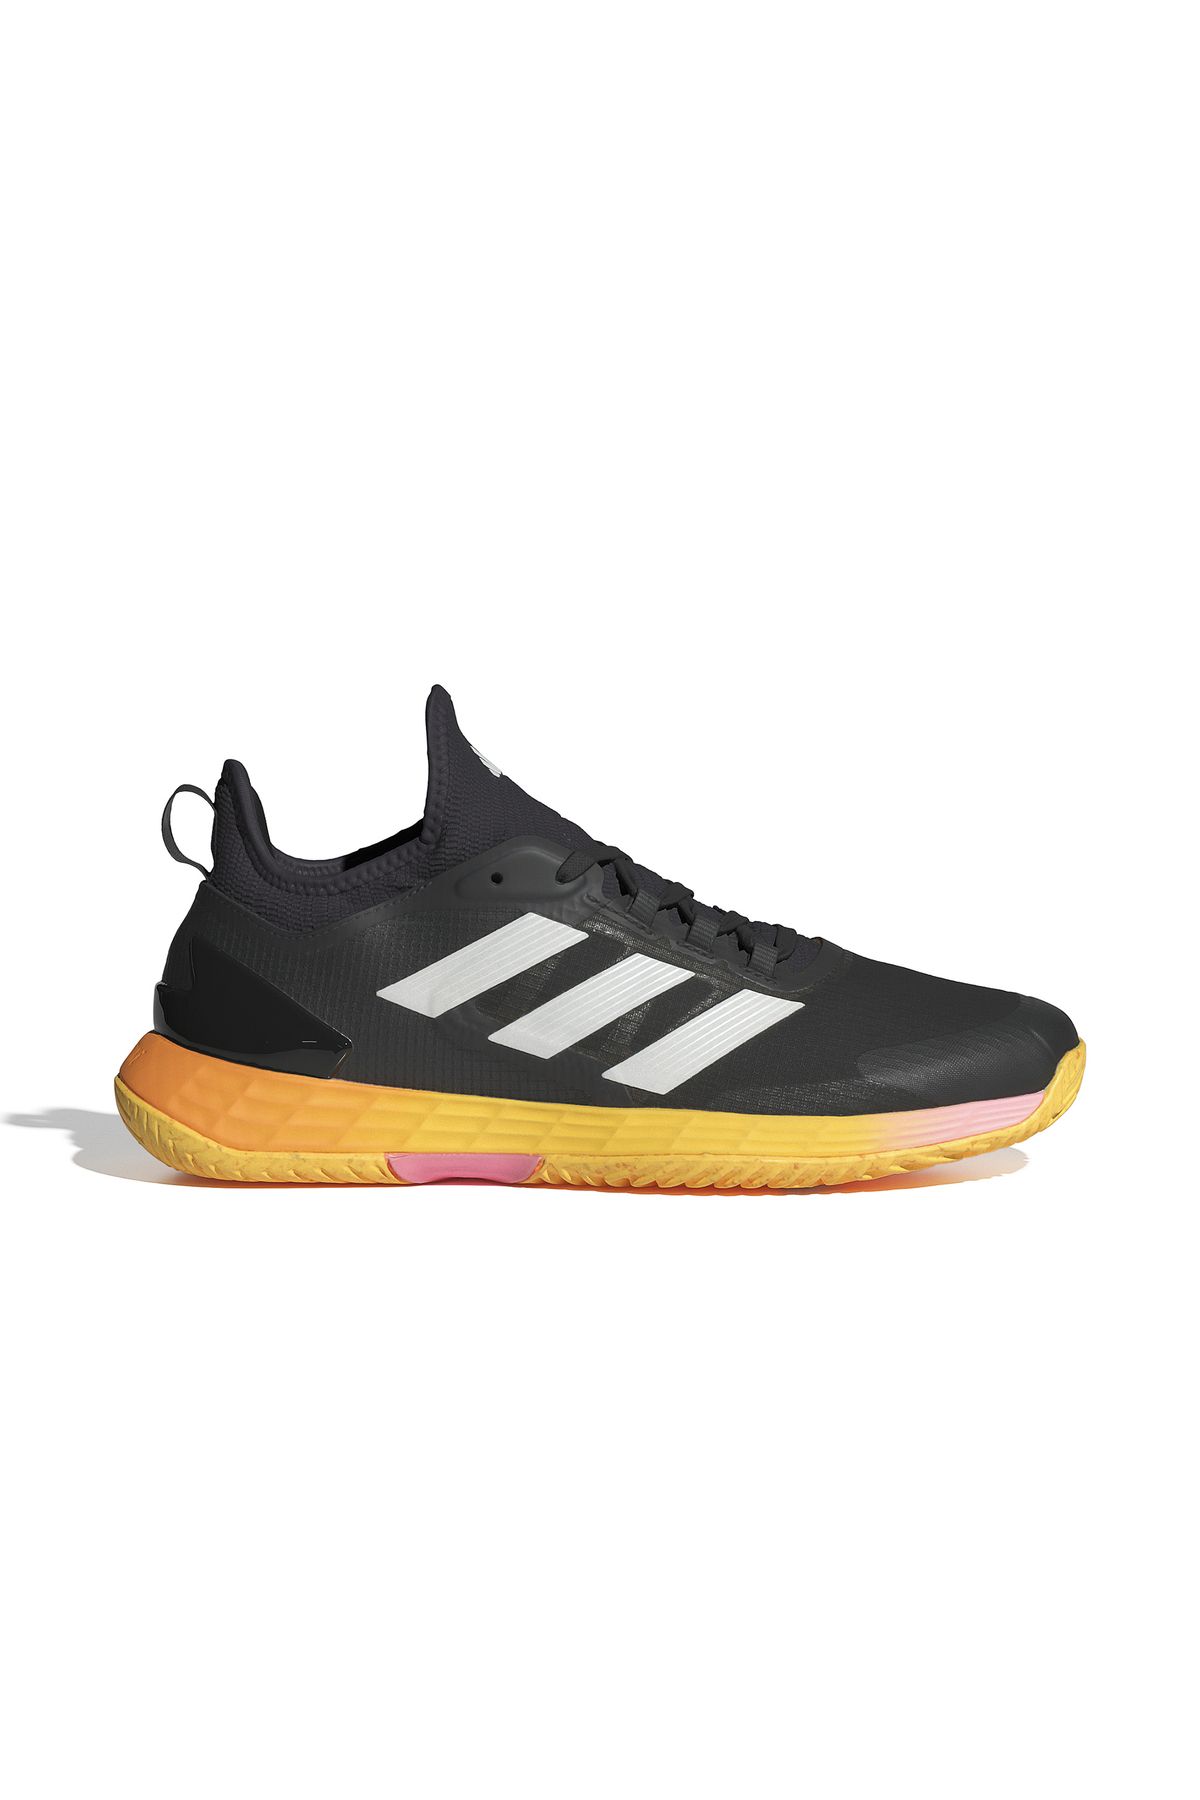 adidas Adizero Ubersonic 4.1 M Erkek Tenis Ayakkabısı IF0446 Siyah